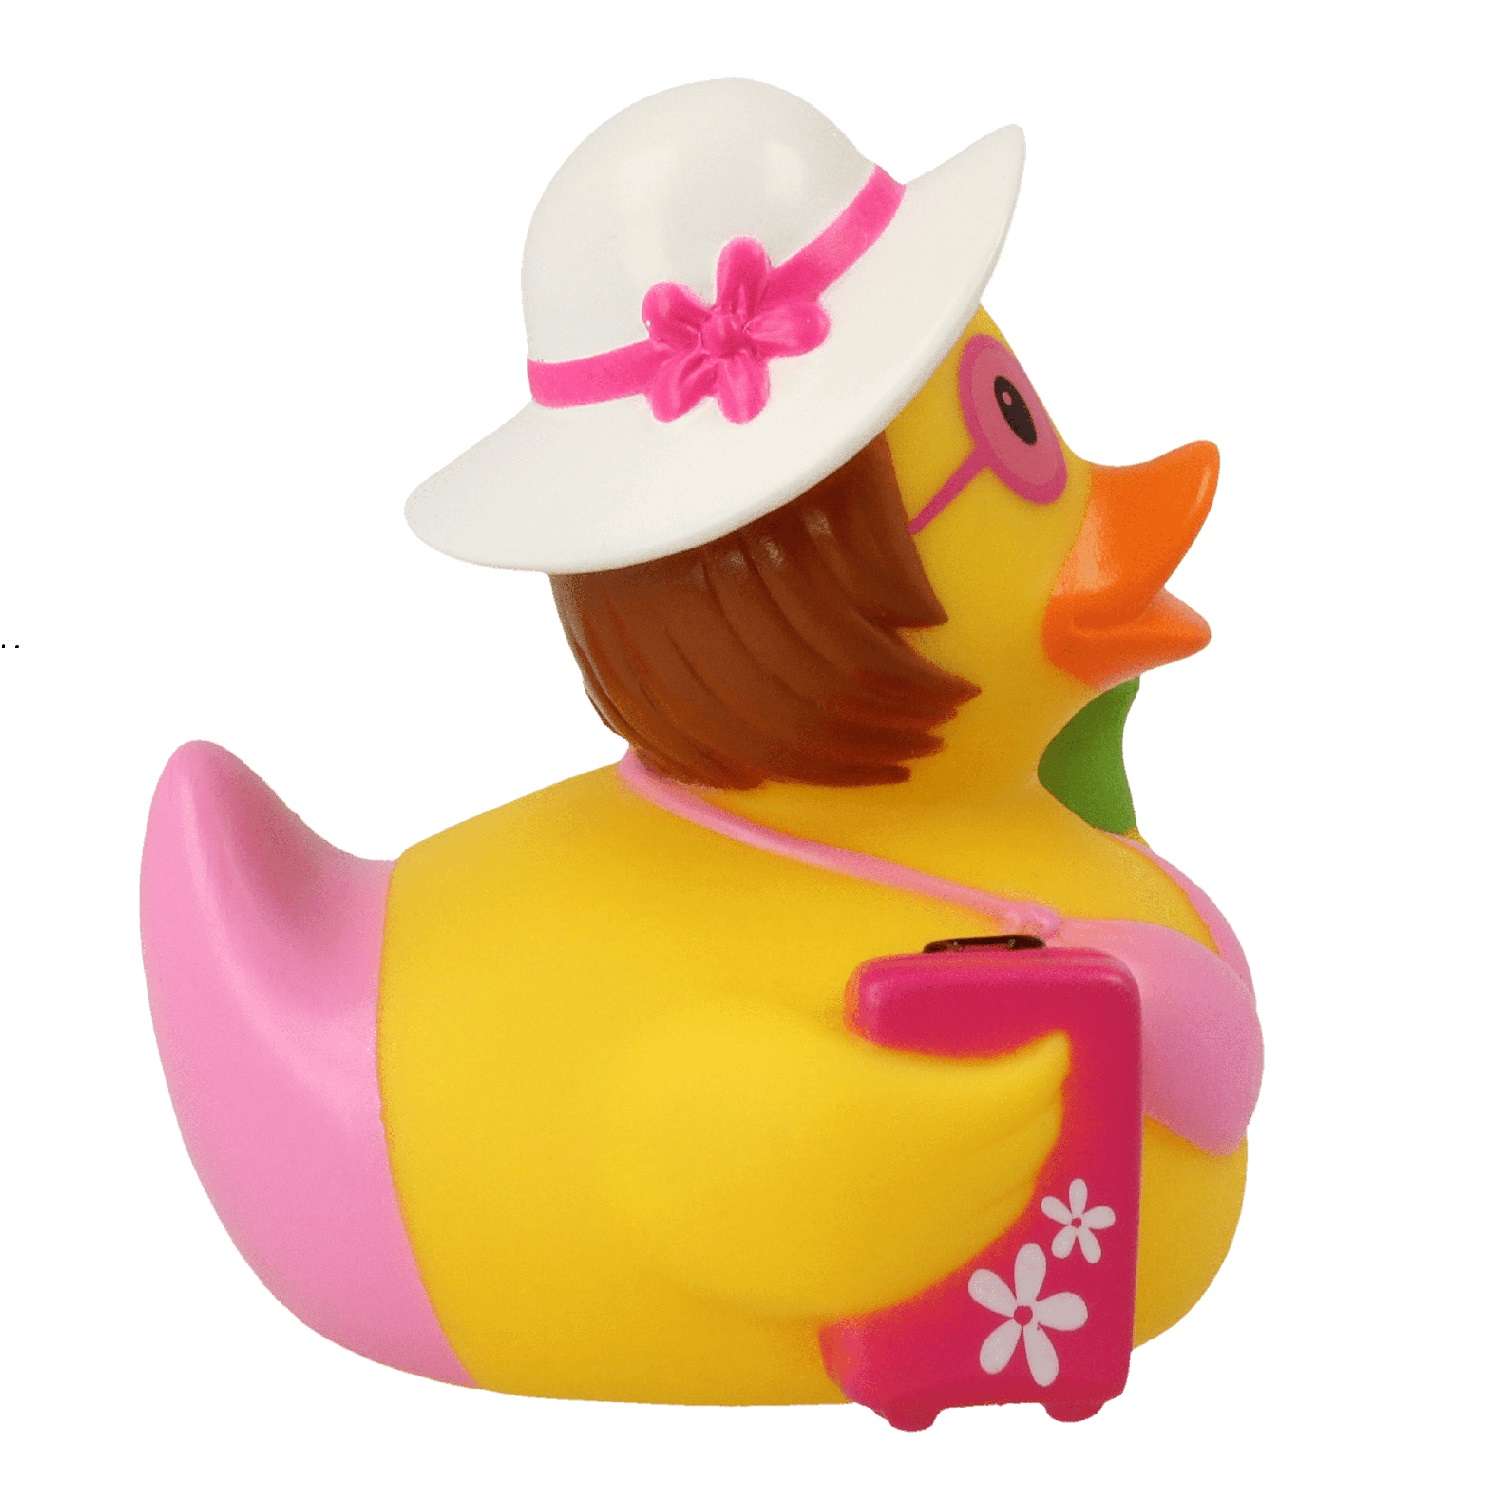 Игрушка Funny ducks для ванной Пляжница уточка 1259 - фото 3